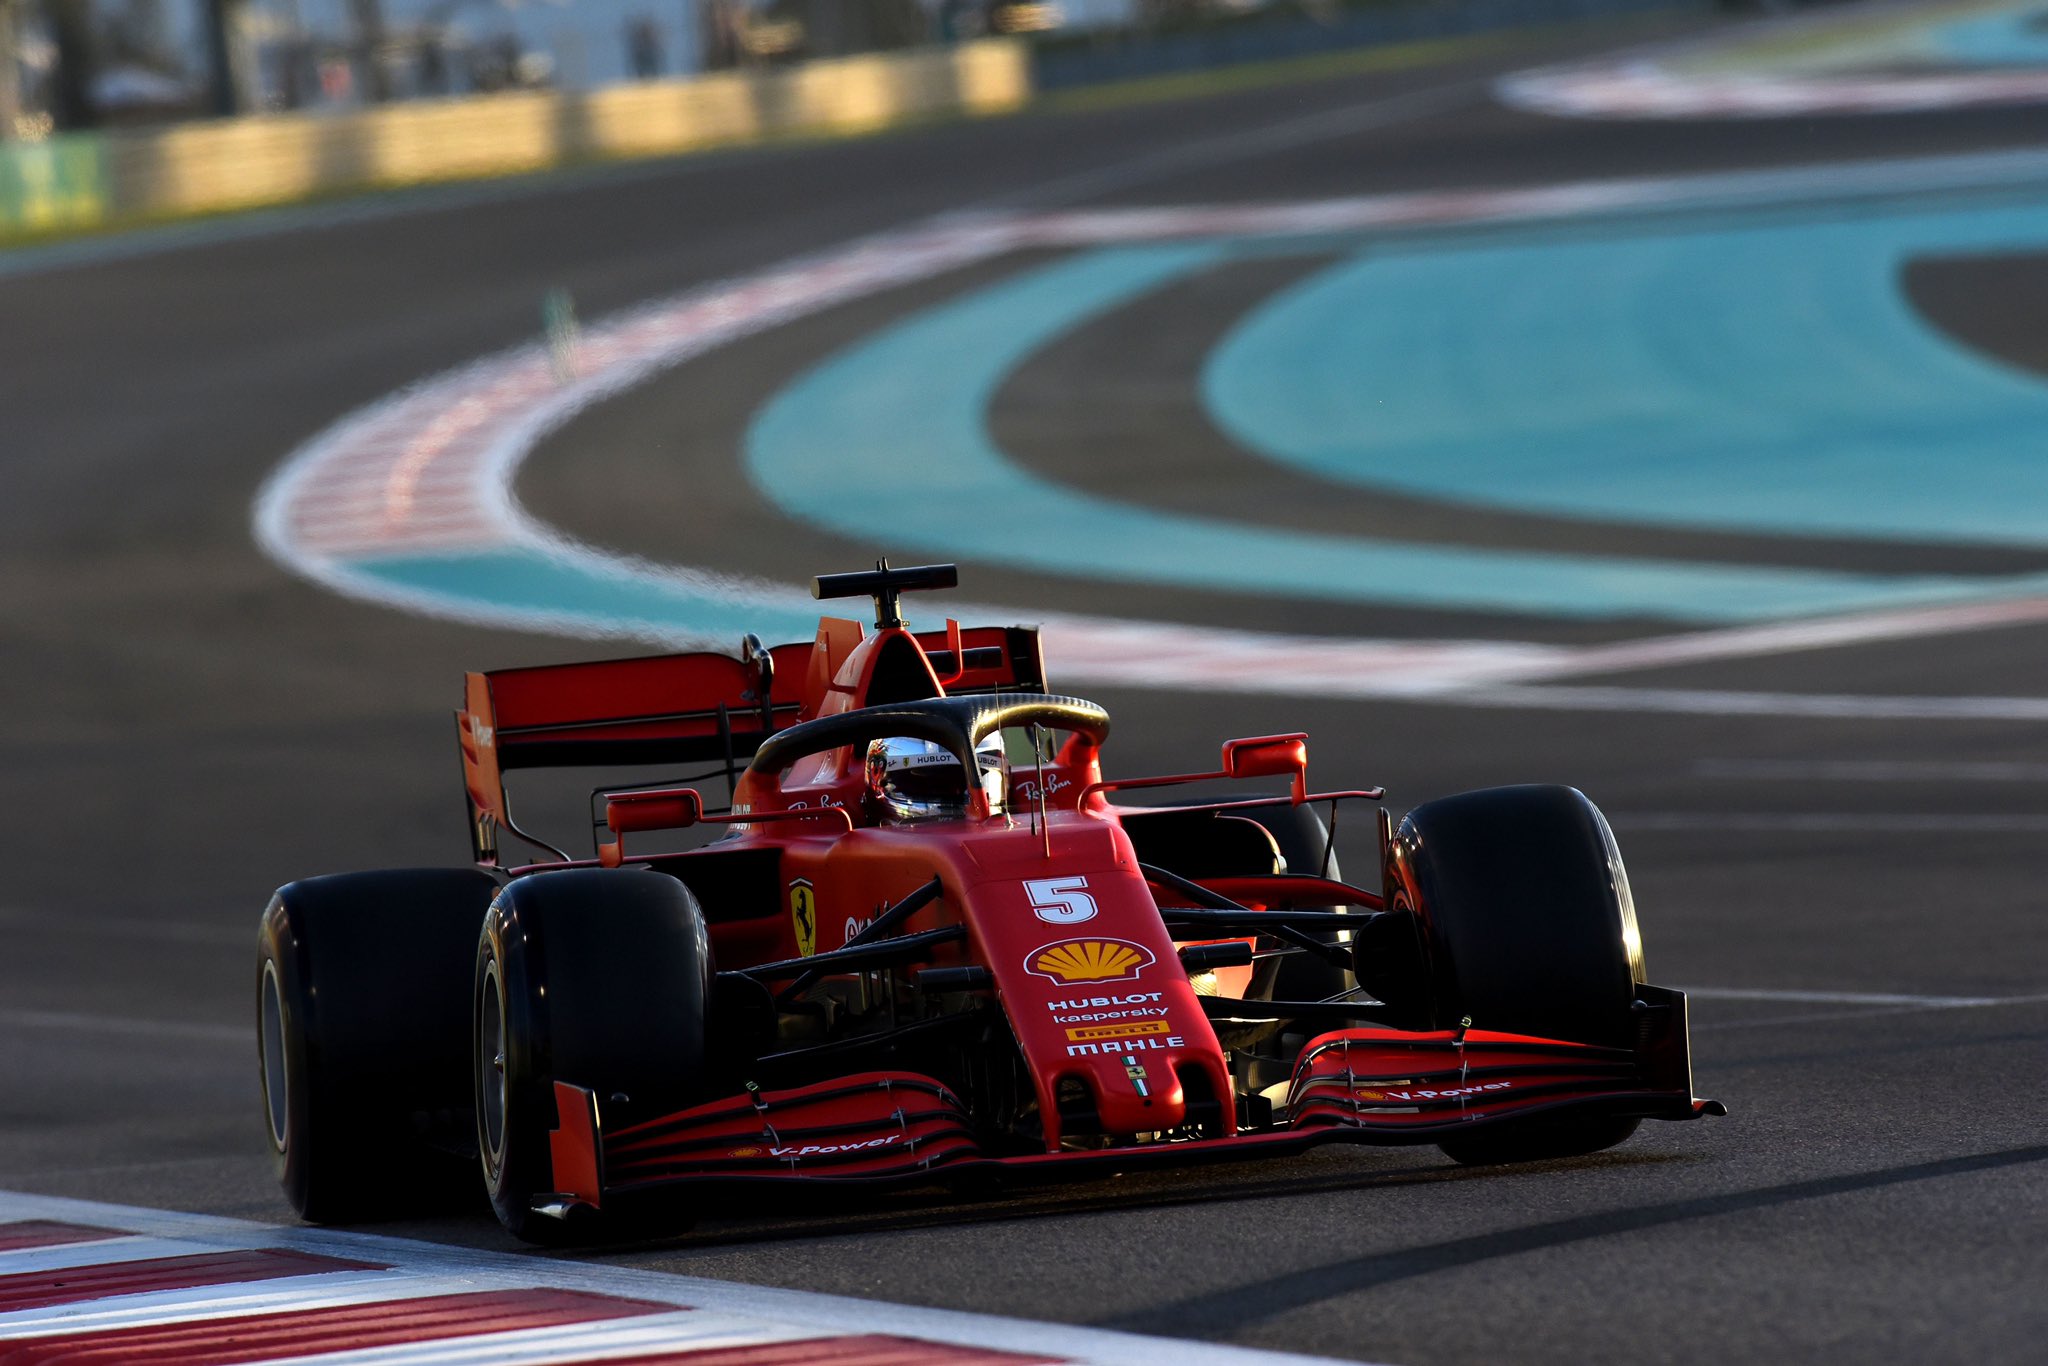 Seb Vettel during FP2 at Abu Dhabi